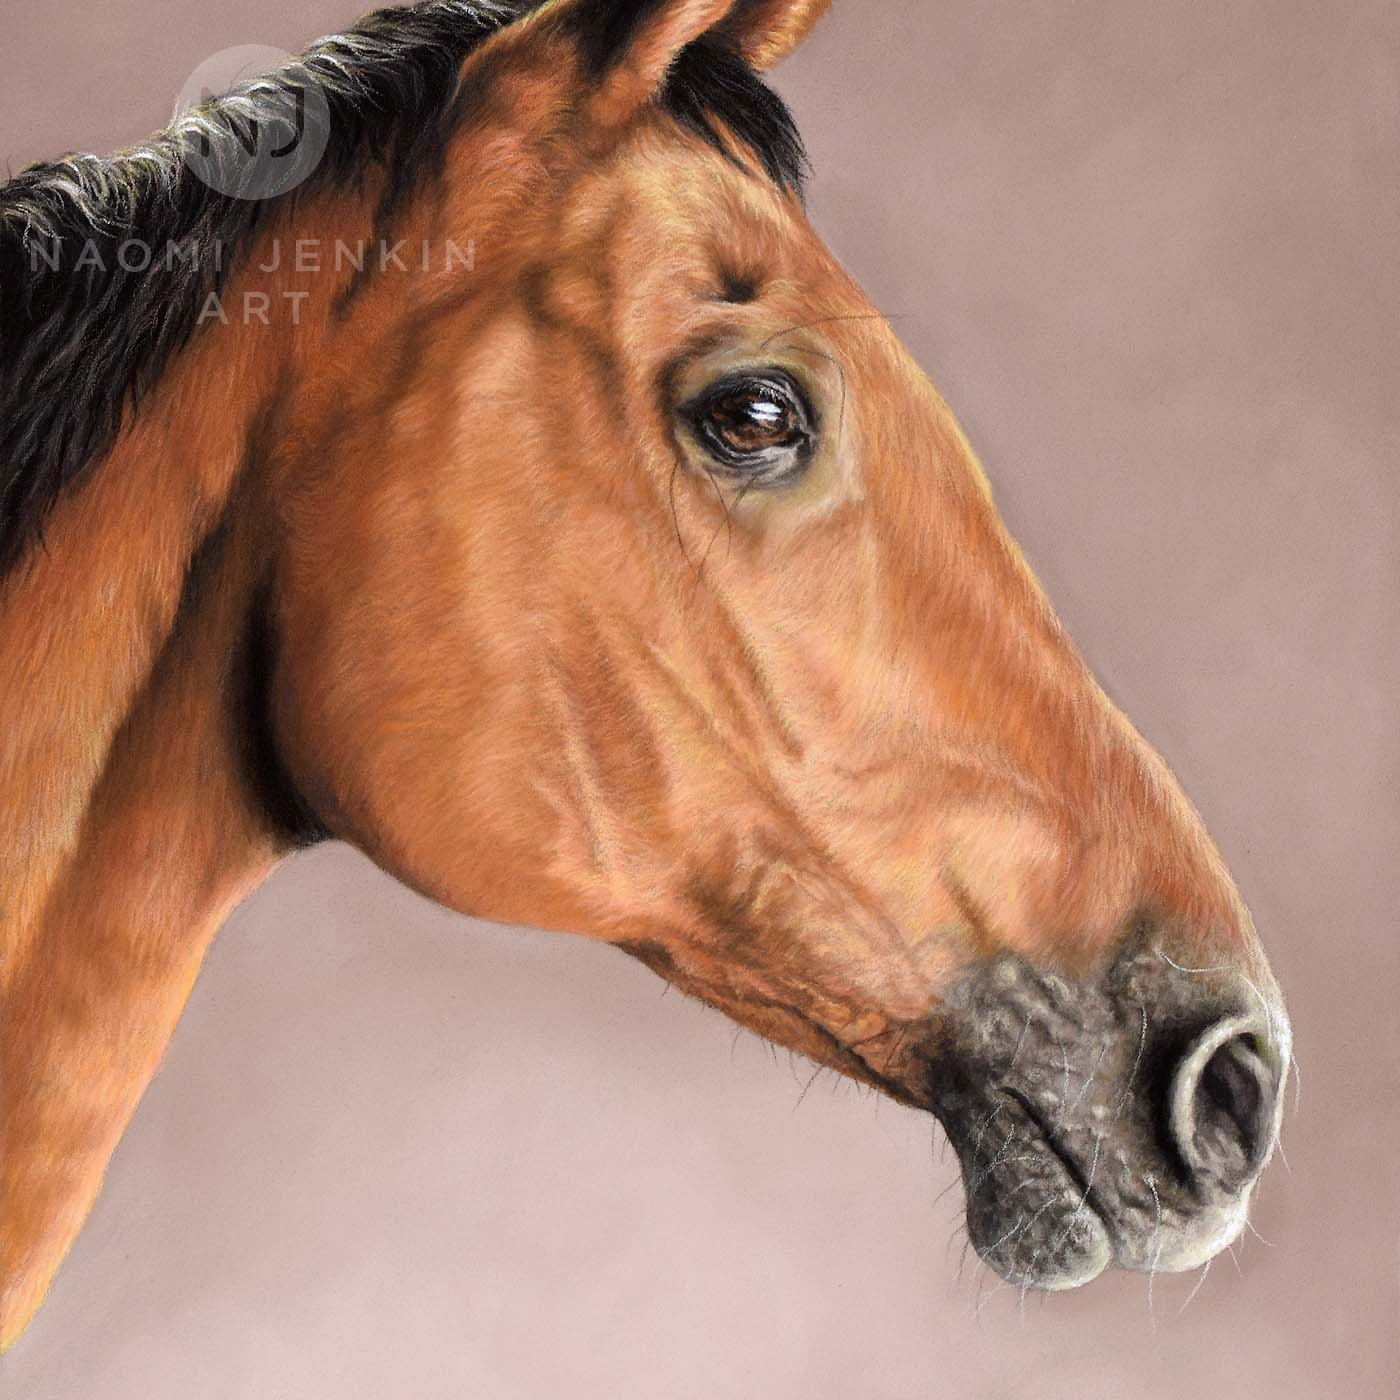 Portrait of racehorse by Naomi Jenkin Art. 